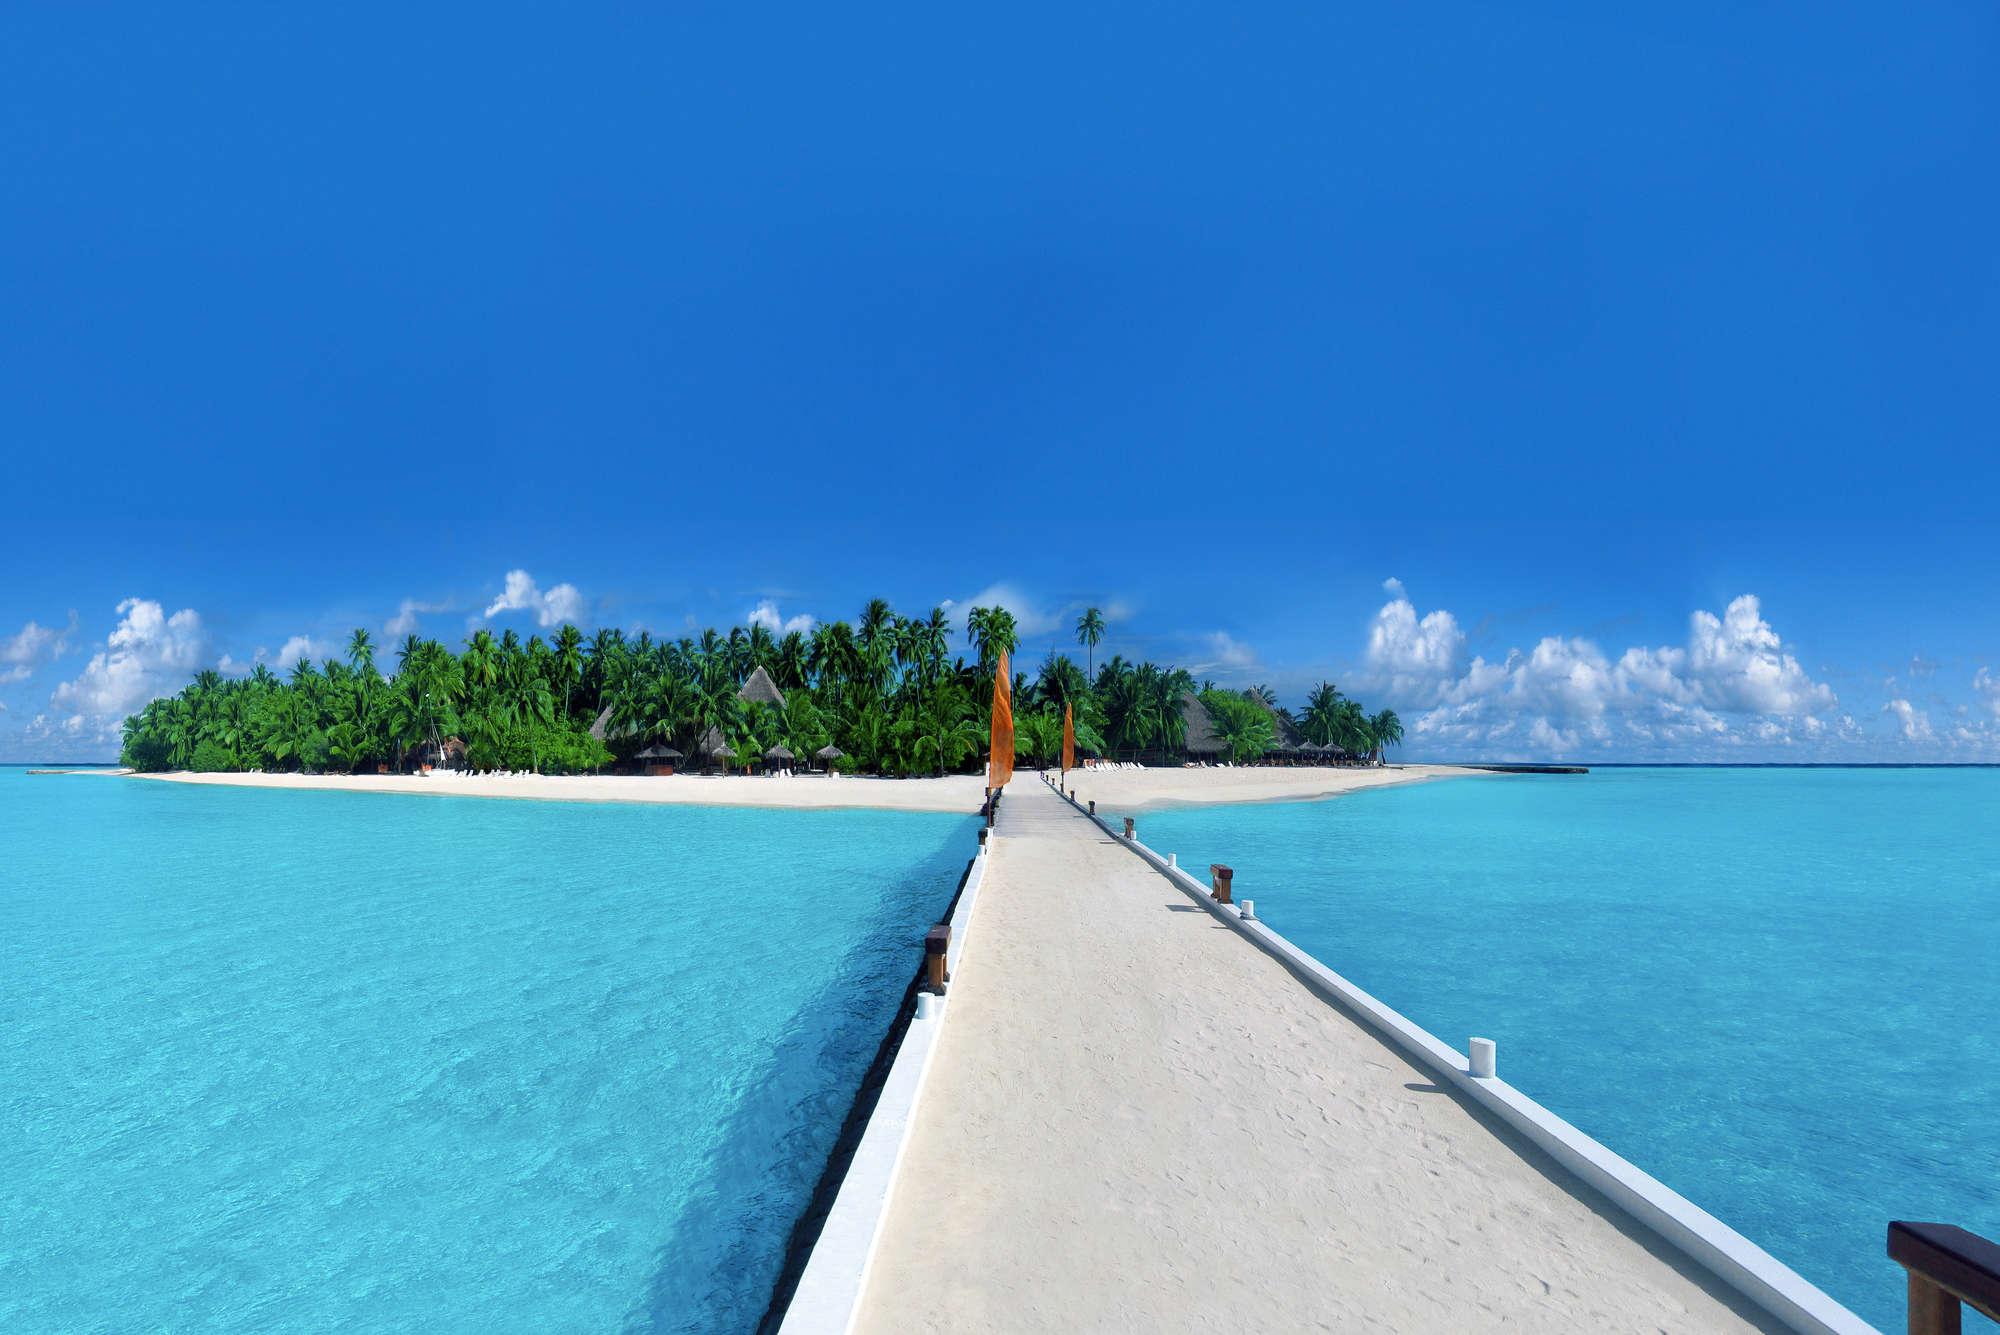             Fotomural Isla con embarcadero a la playa - tejido no tejido liso de alta calidad
        